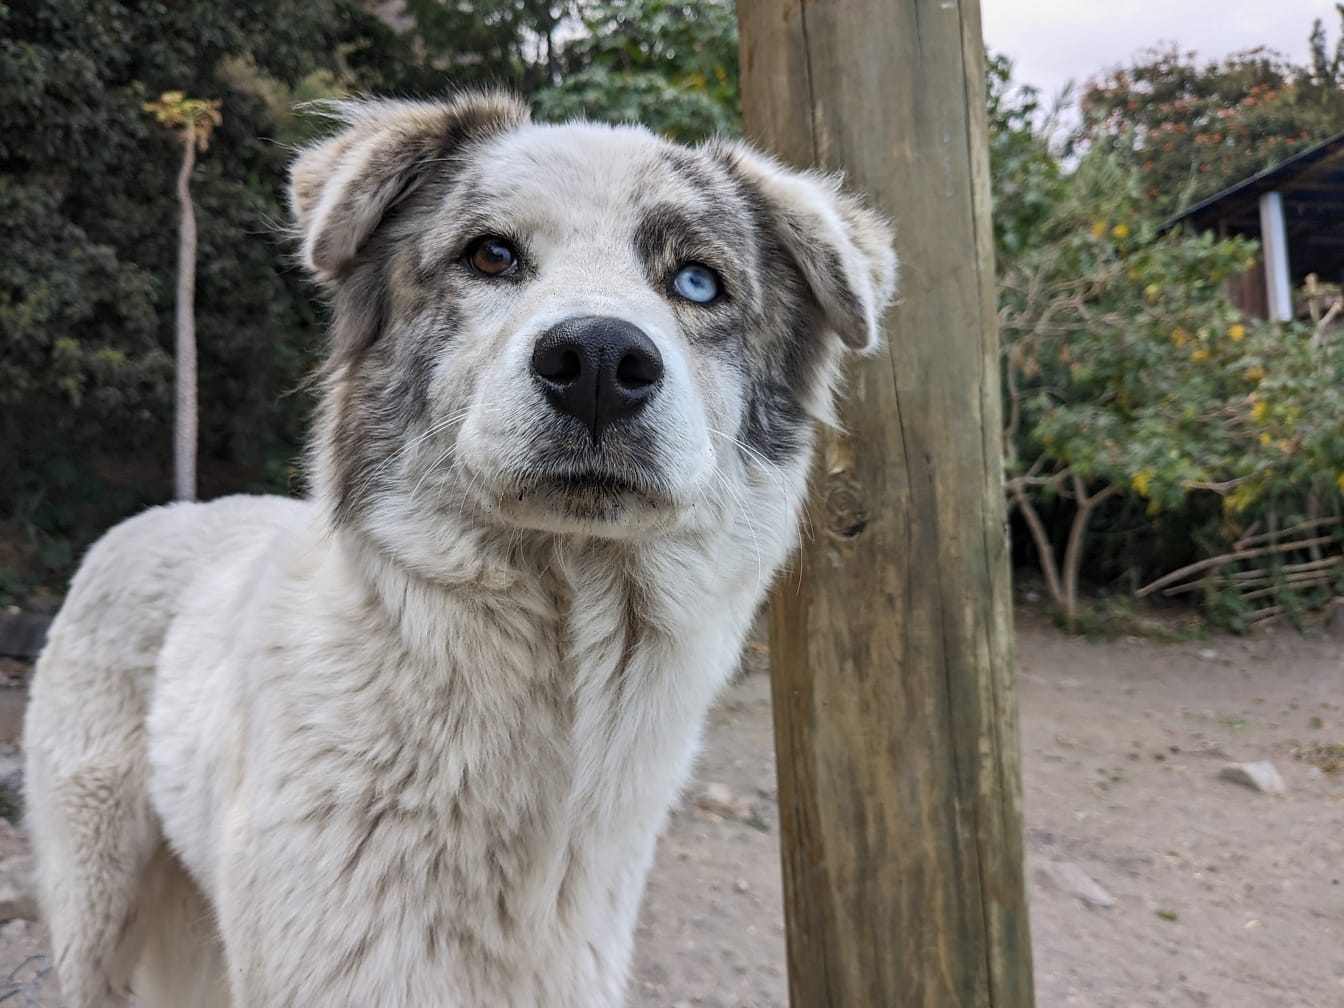 Smiješan pas s jednim plavim i jednim smeđim okom koji stoji pored drvenog stupa